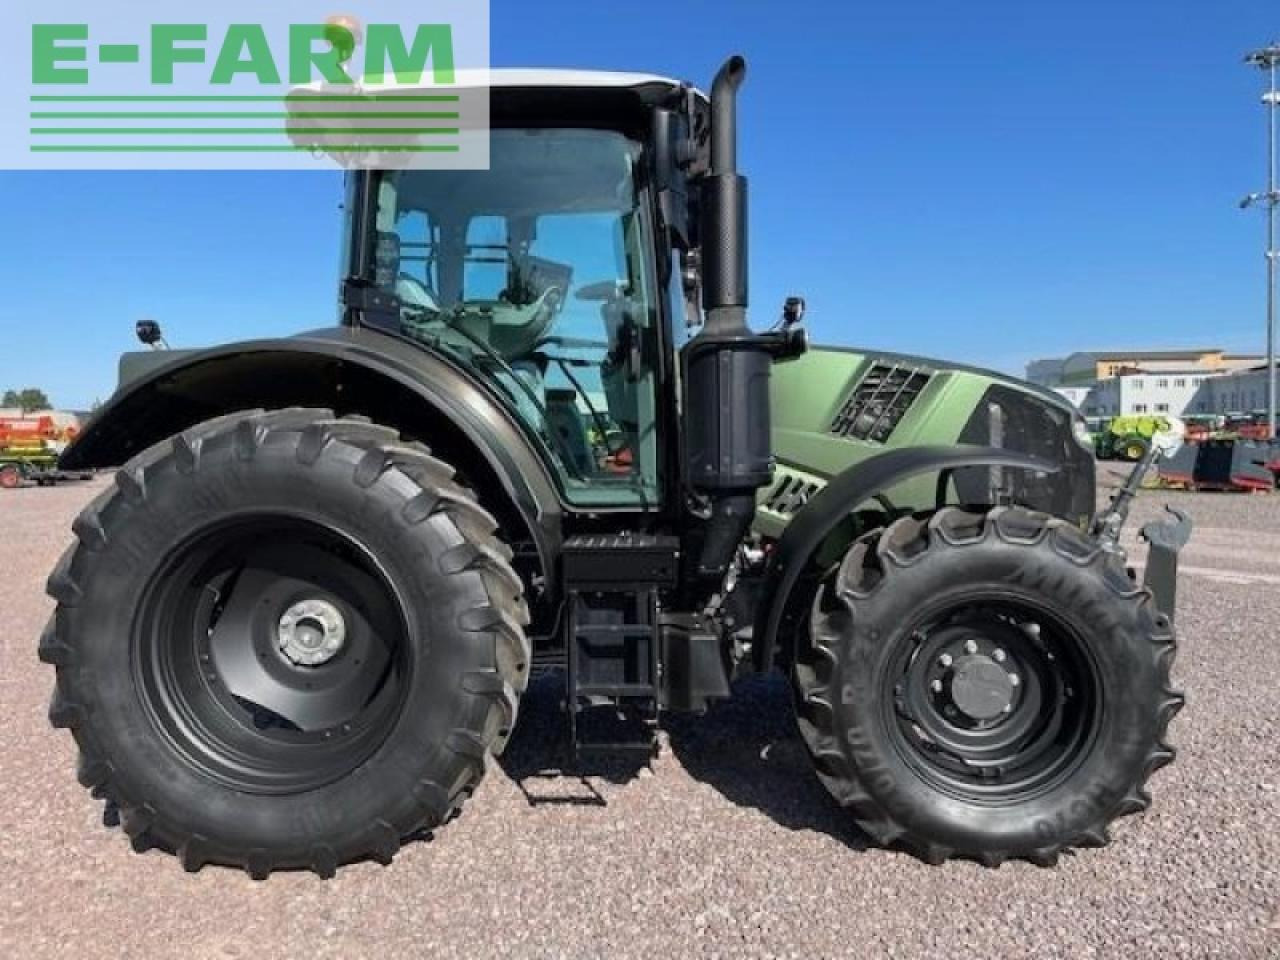 Farm tractor CLAAS arion 530 cmatic sur mesure